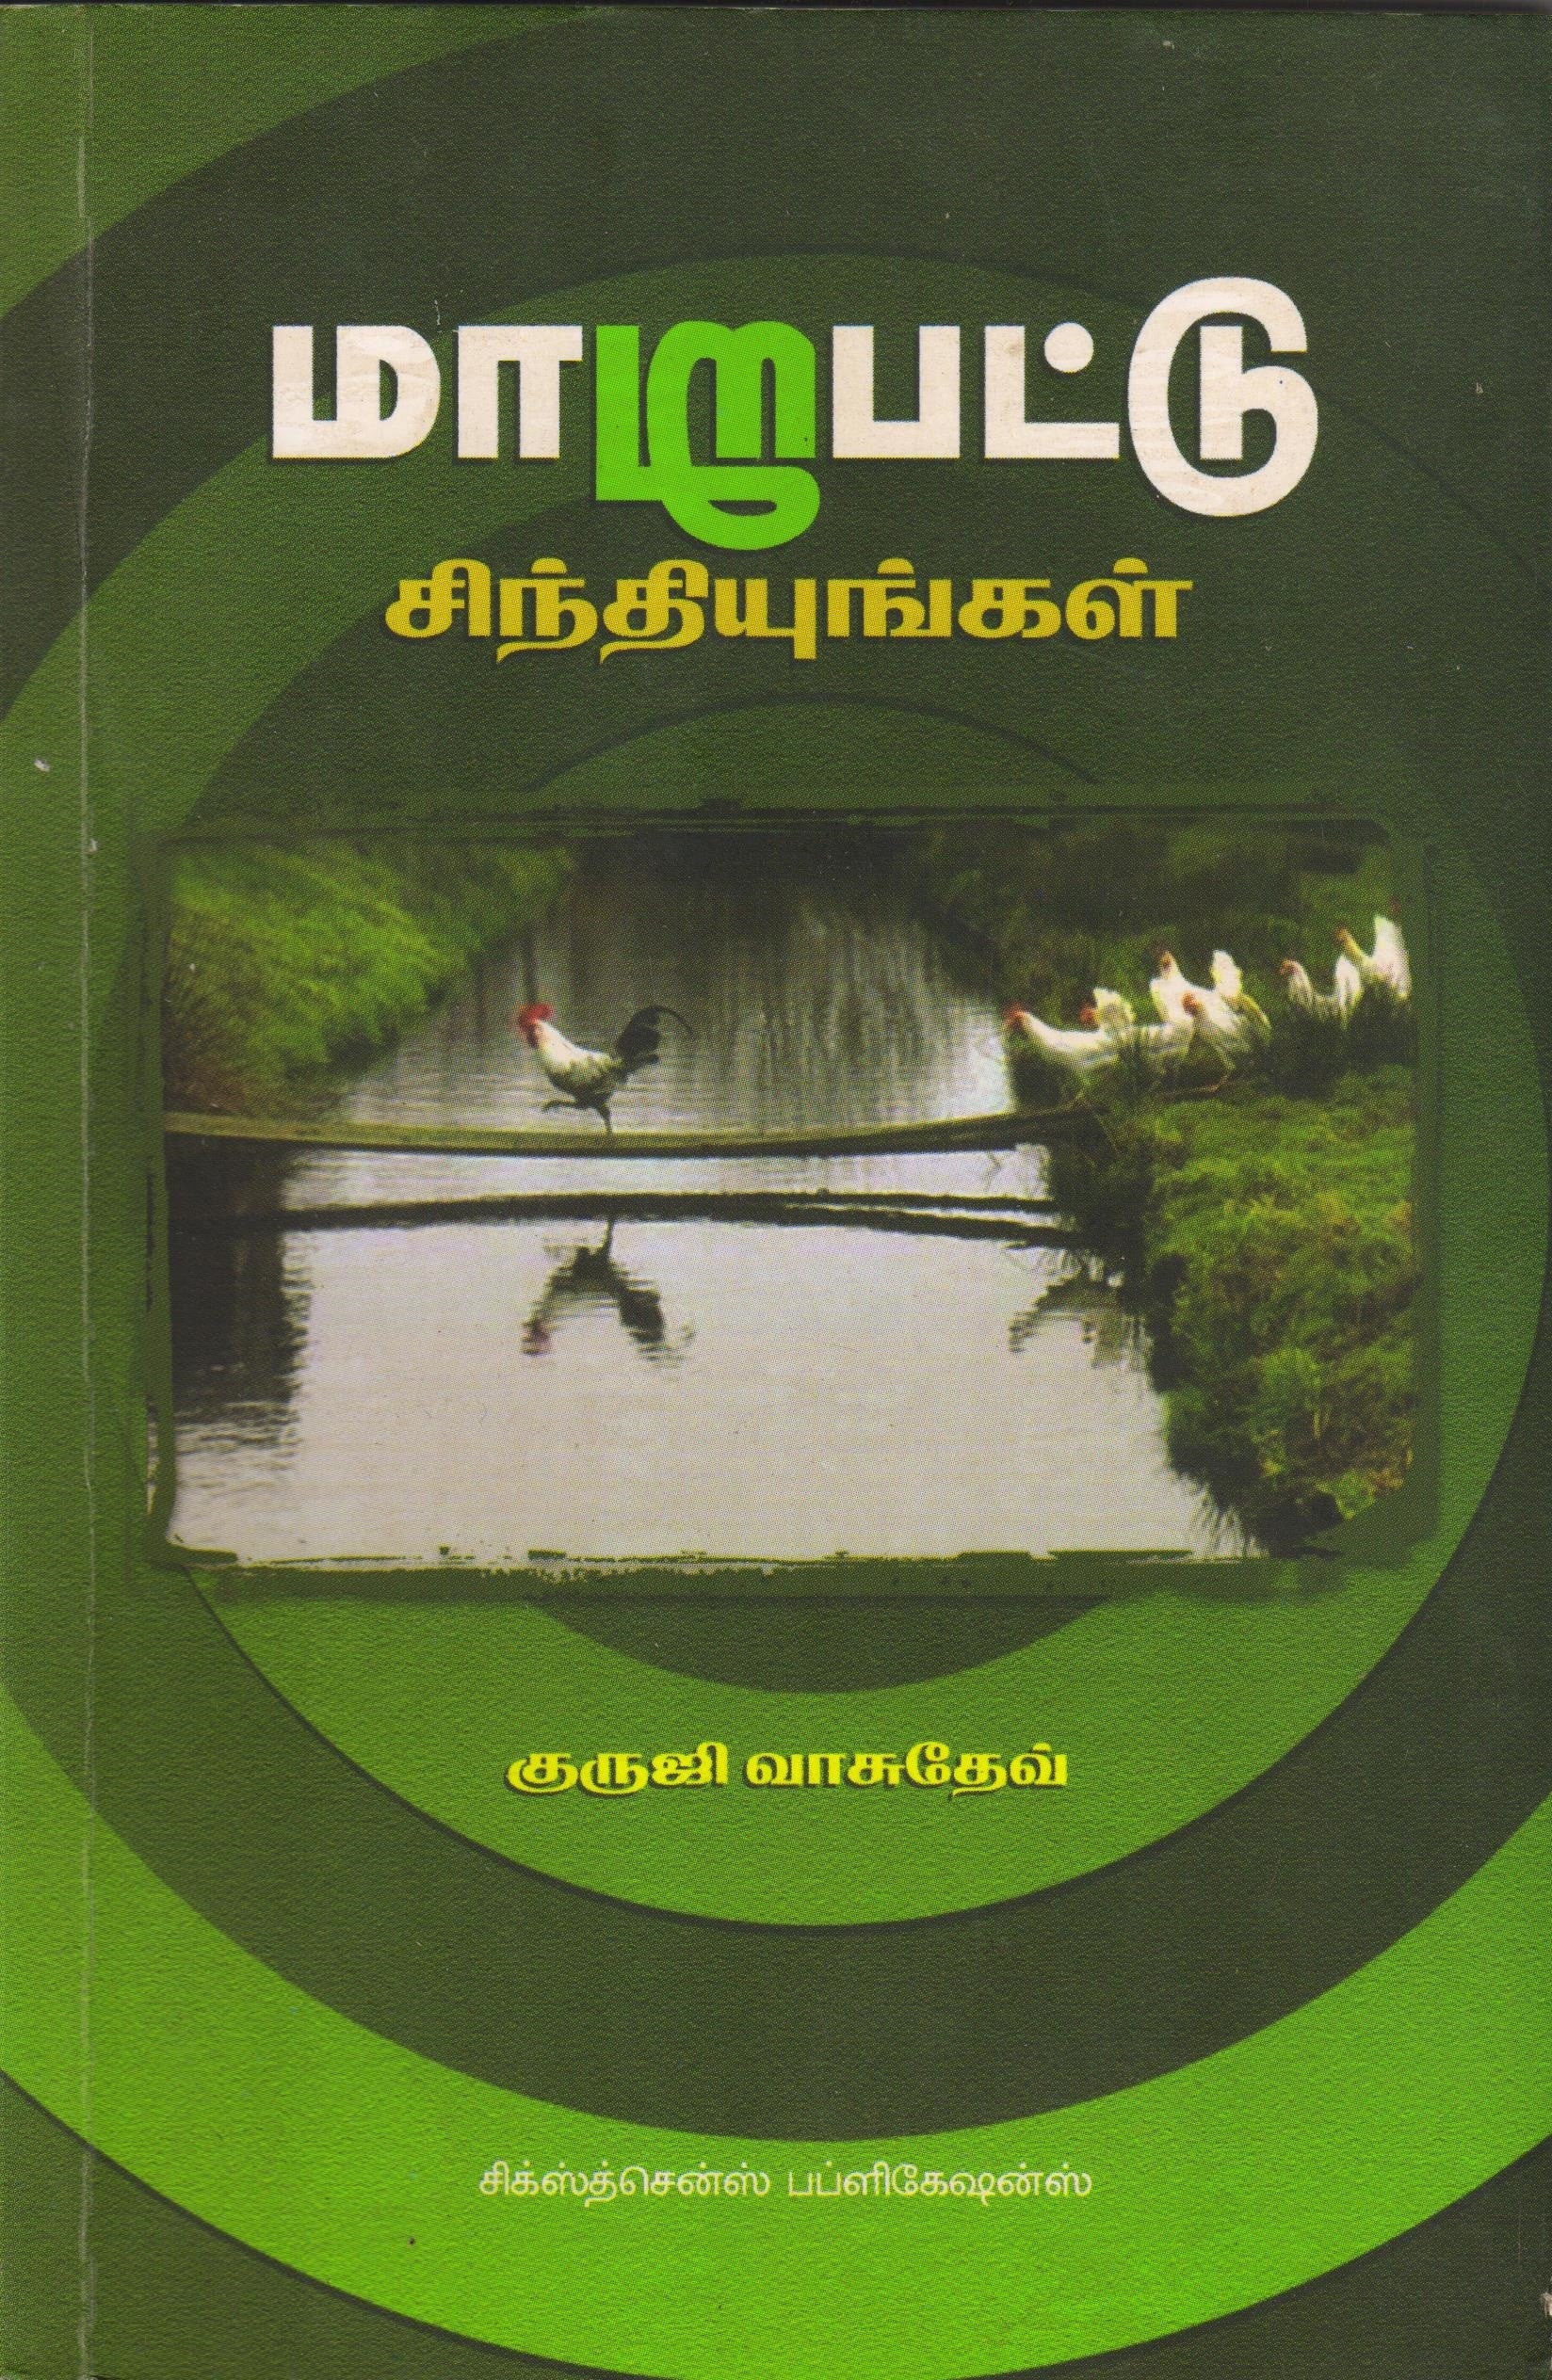 மாறுபட்டு சிந்தியுங்கள் Maarupatu Sinthiyunkal(Tamil Books) - Faritha